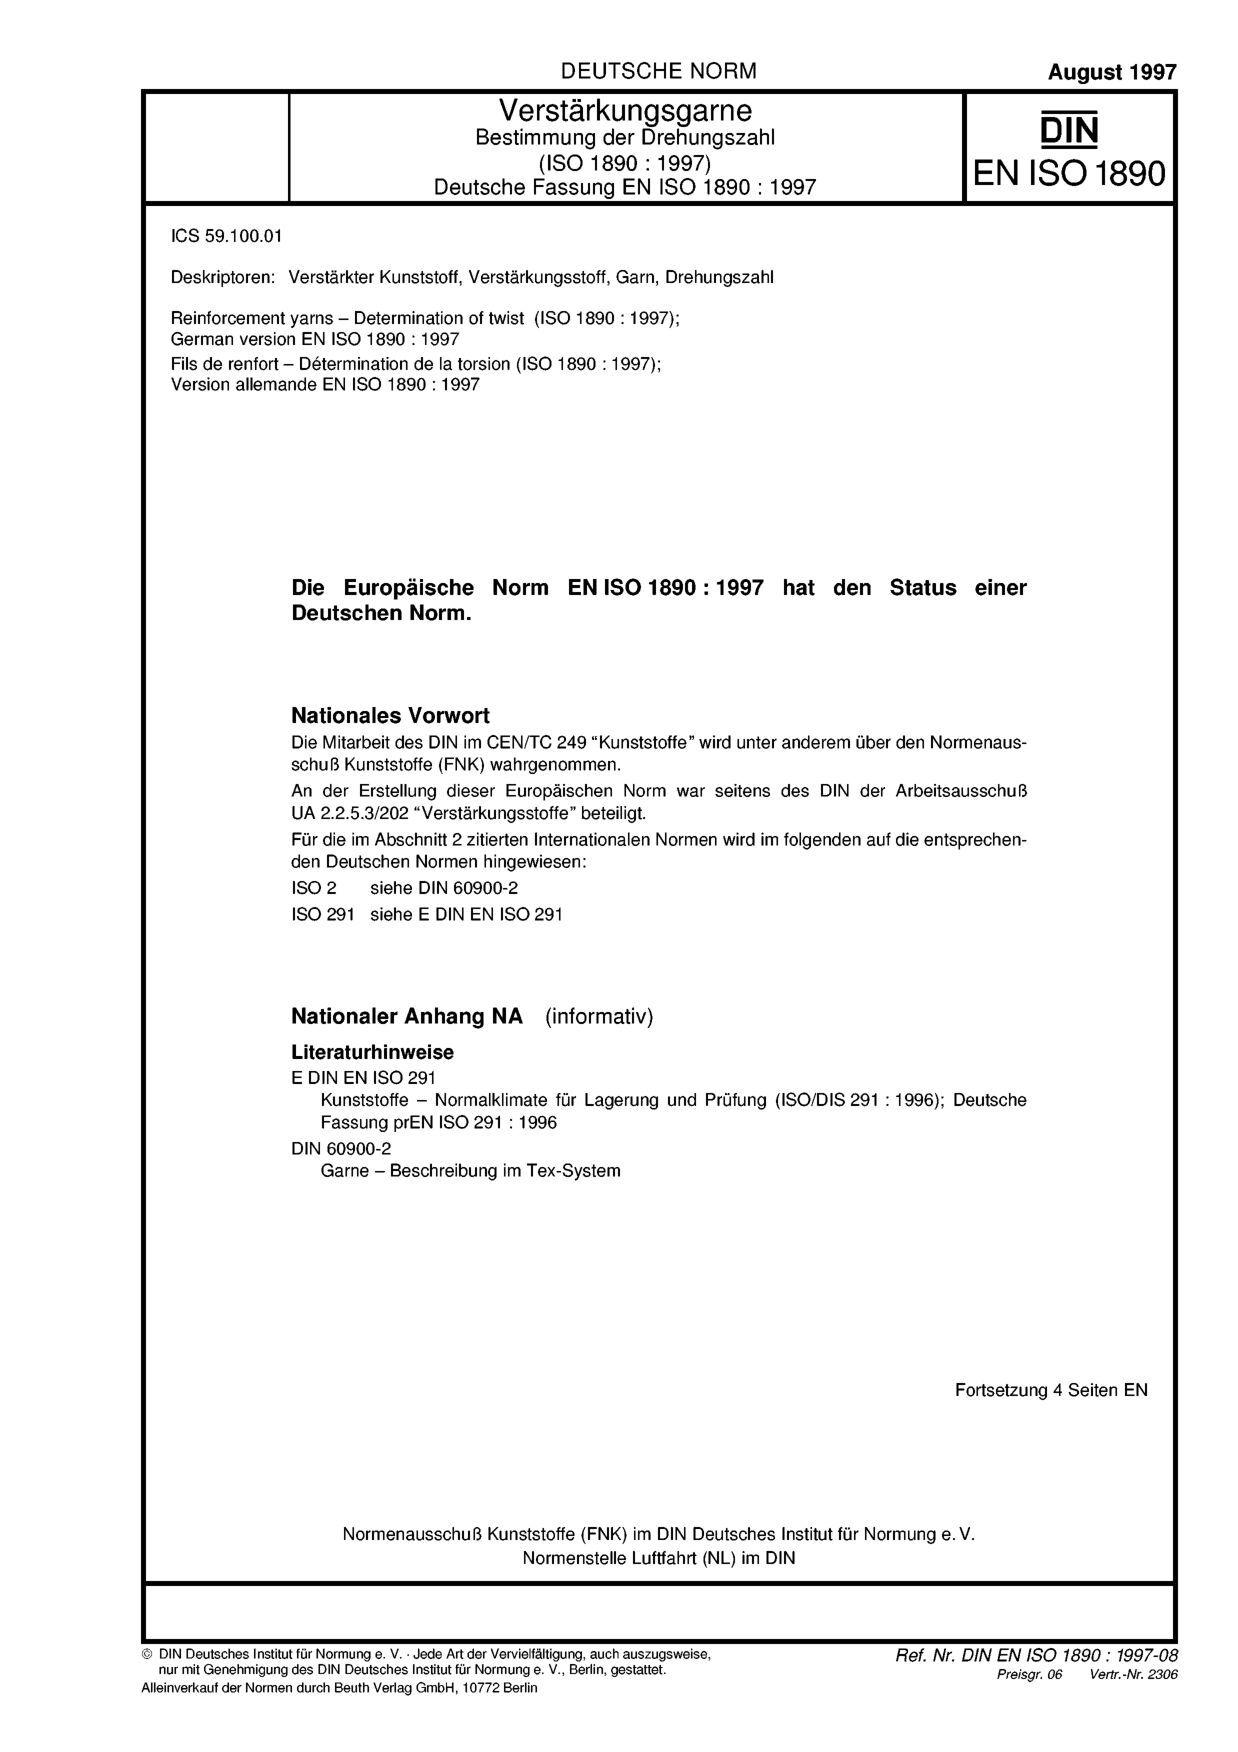 DIN EN ISO 1890:1997封面图